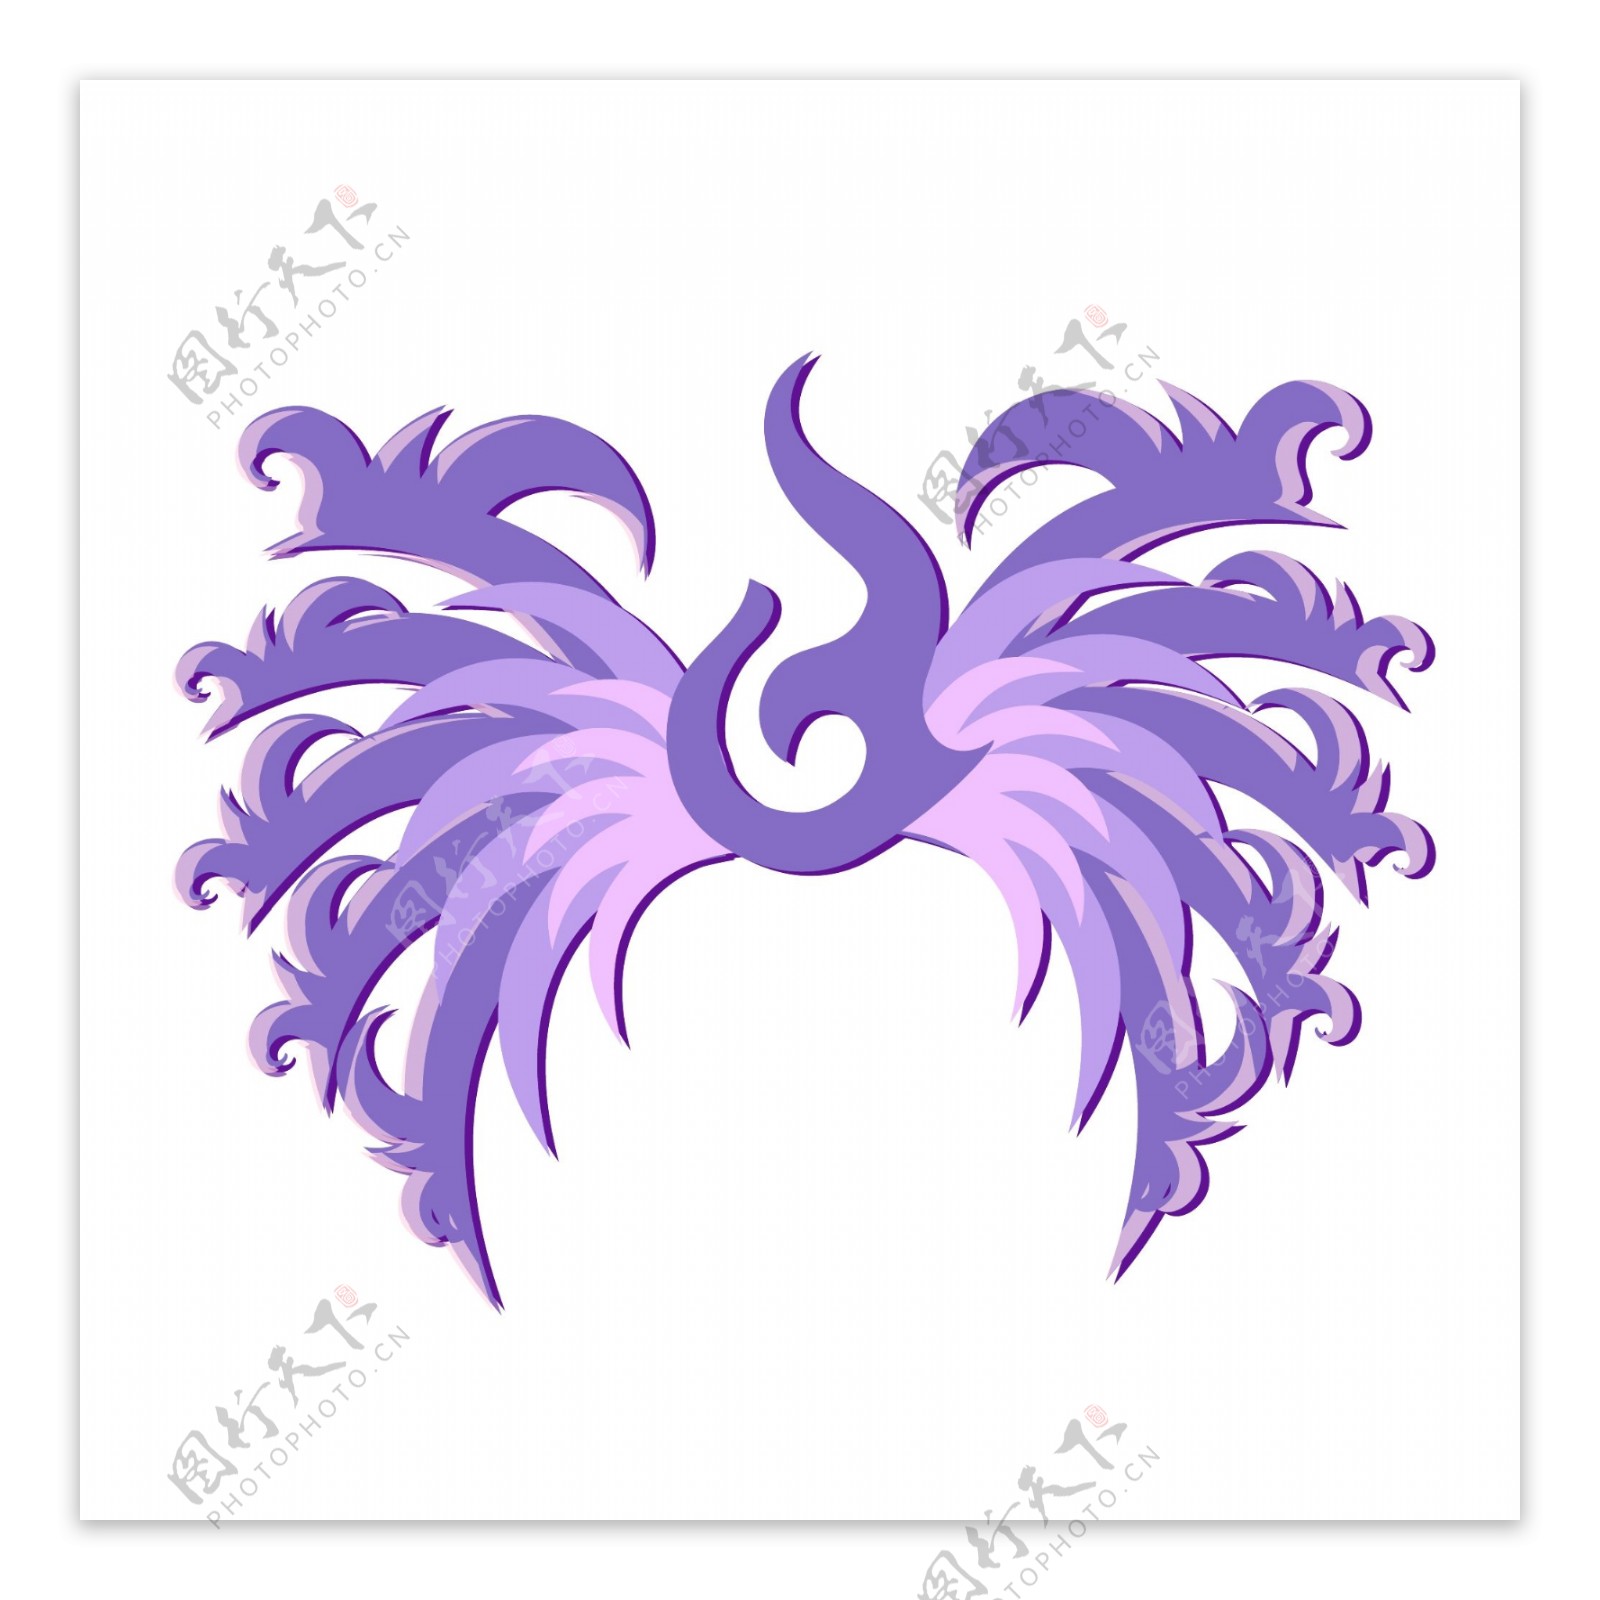 紫色系简约翅膀图腾矢量图案元素